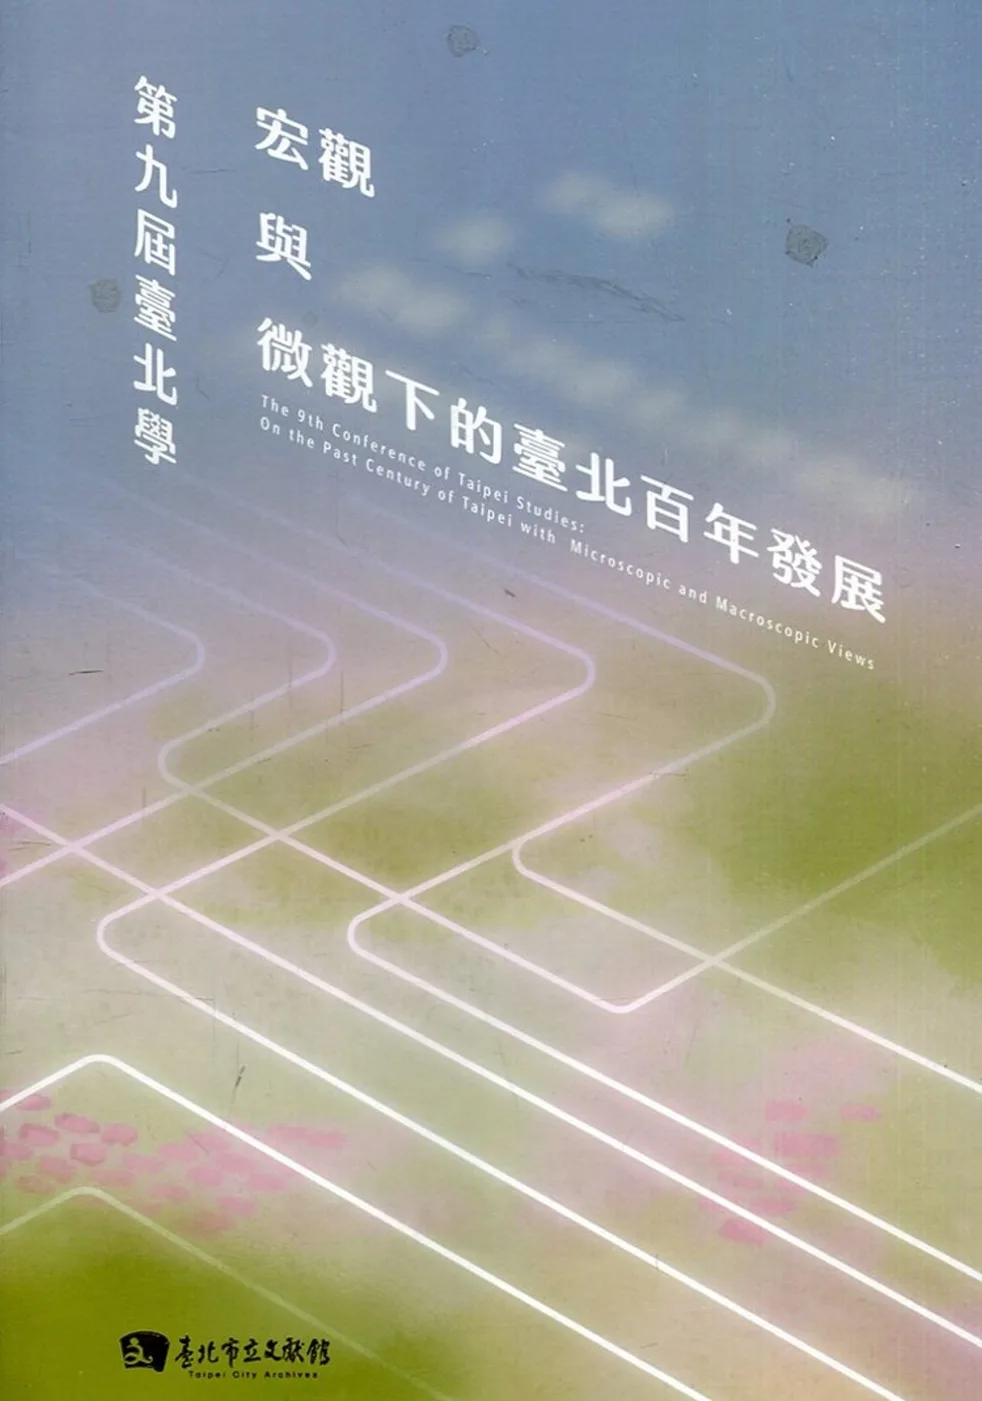 第九屆臺北學:宏觀與微觀下的臺北百年發展(附光碟)